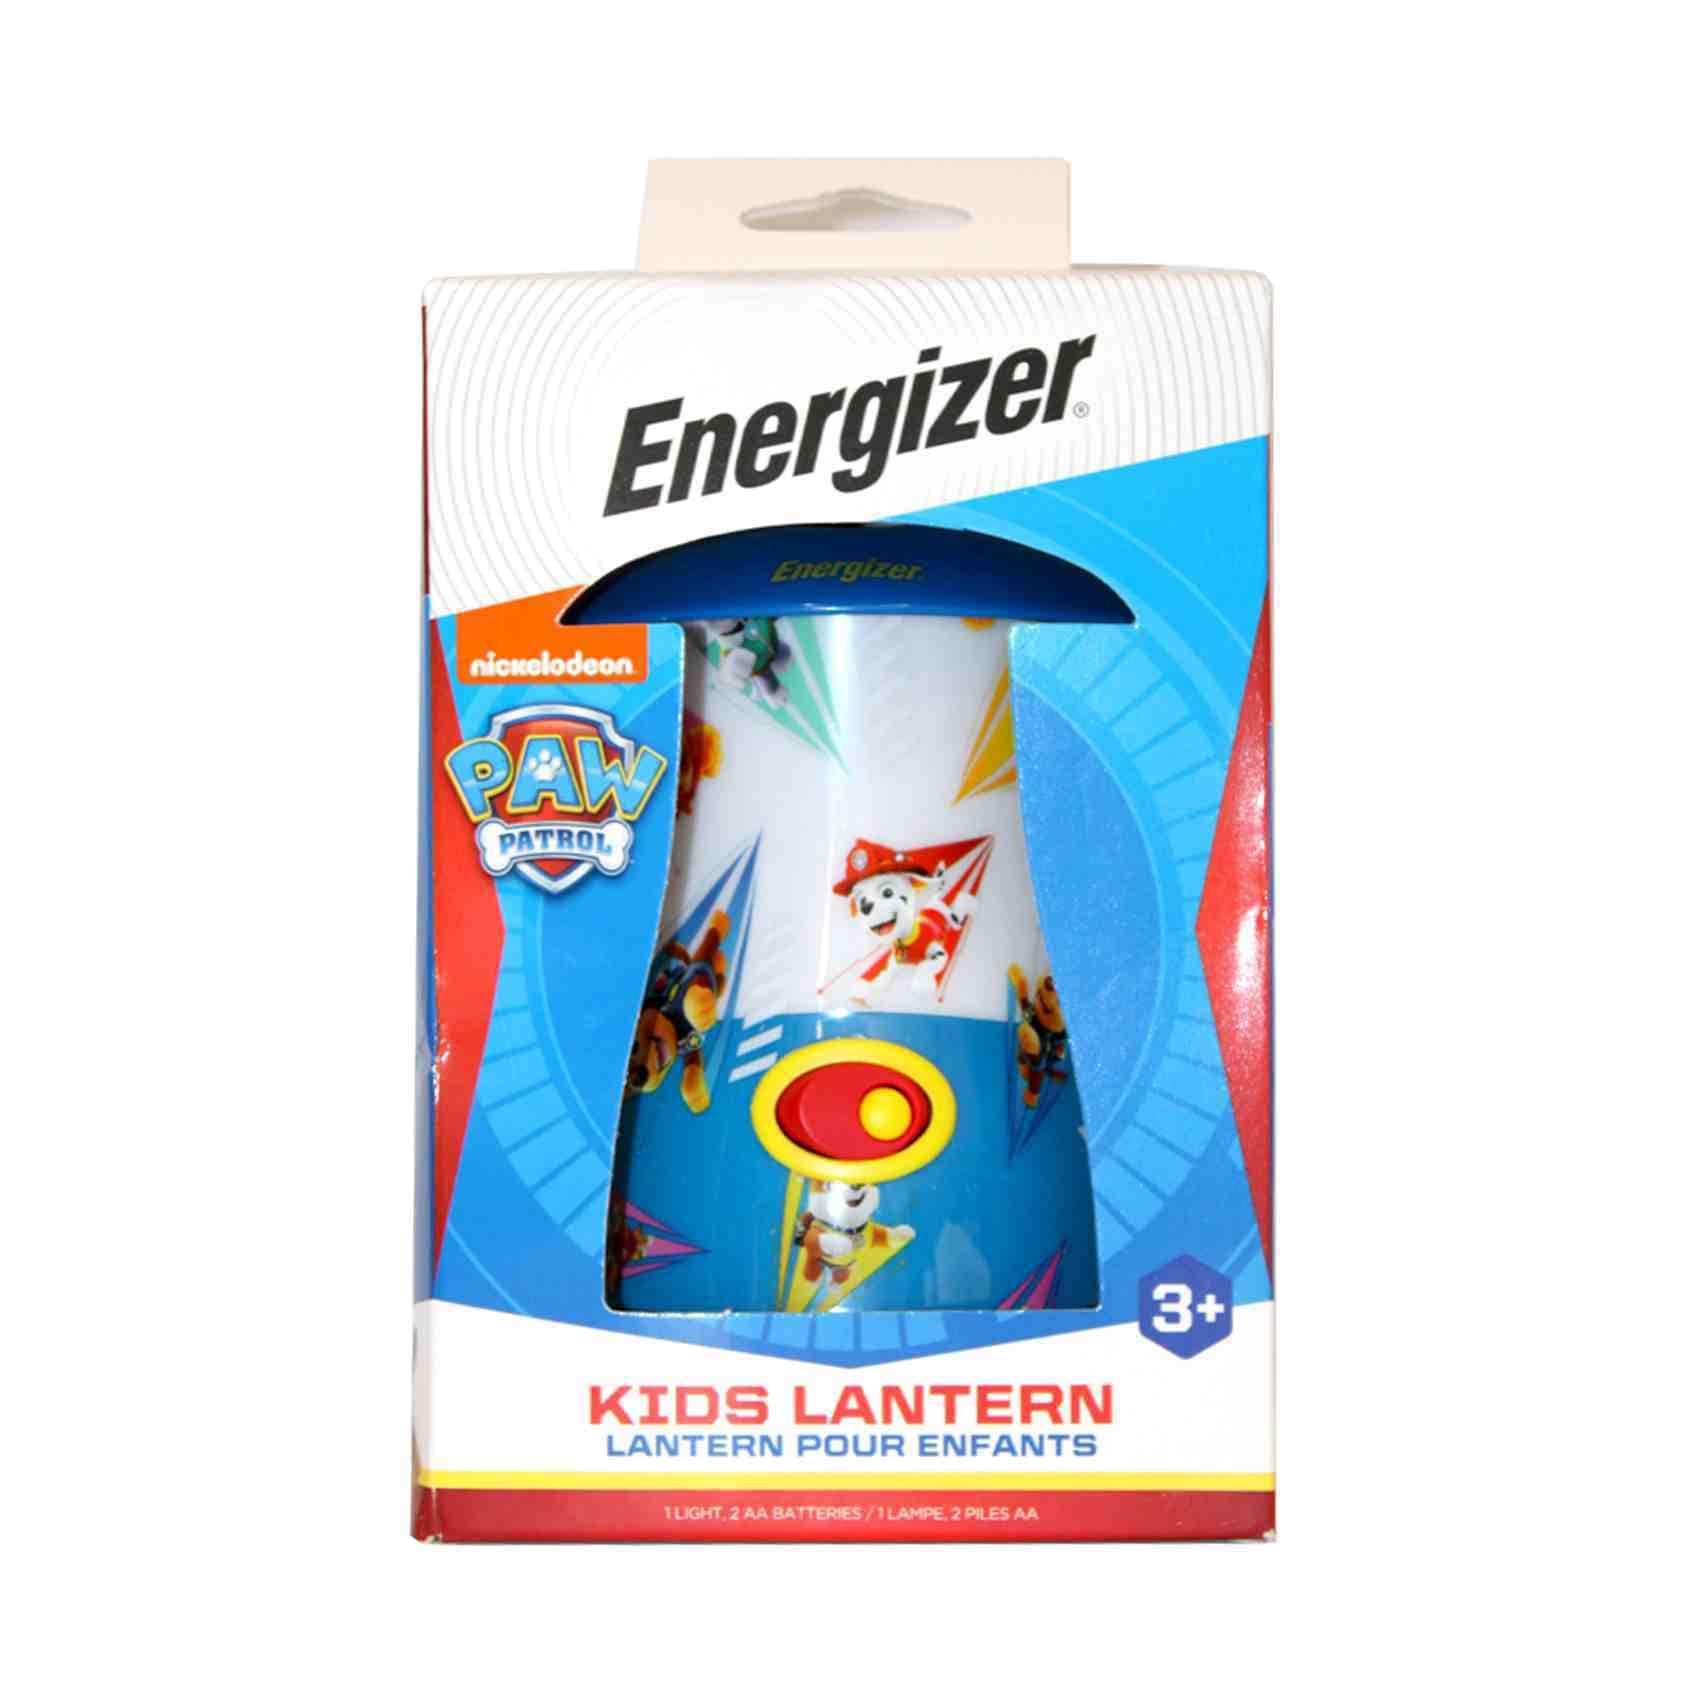 Buy Energizer Nickoledeon Paw Patrol Kids Lantern Online